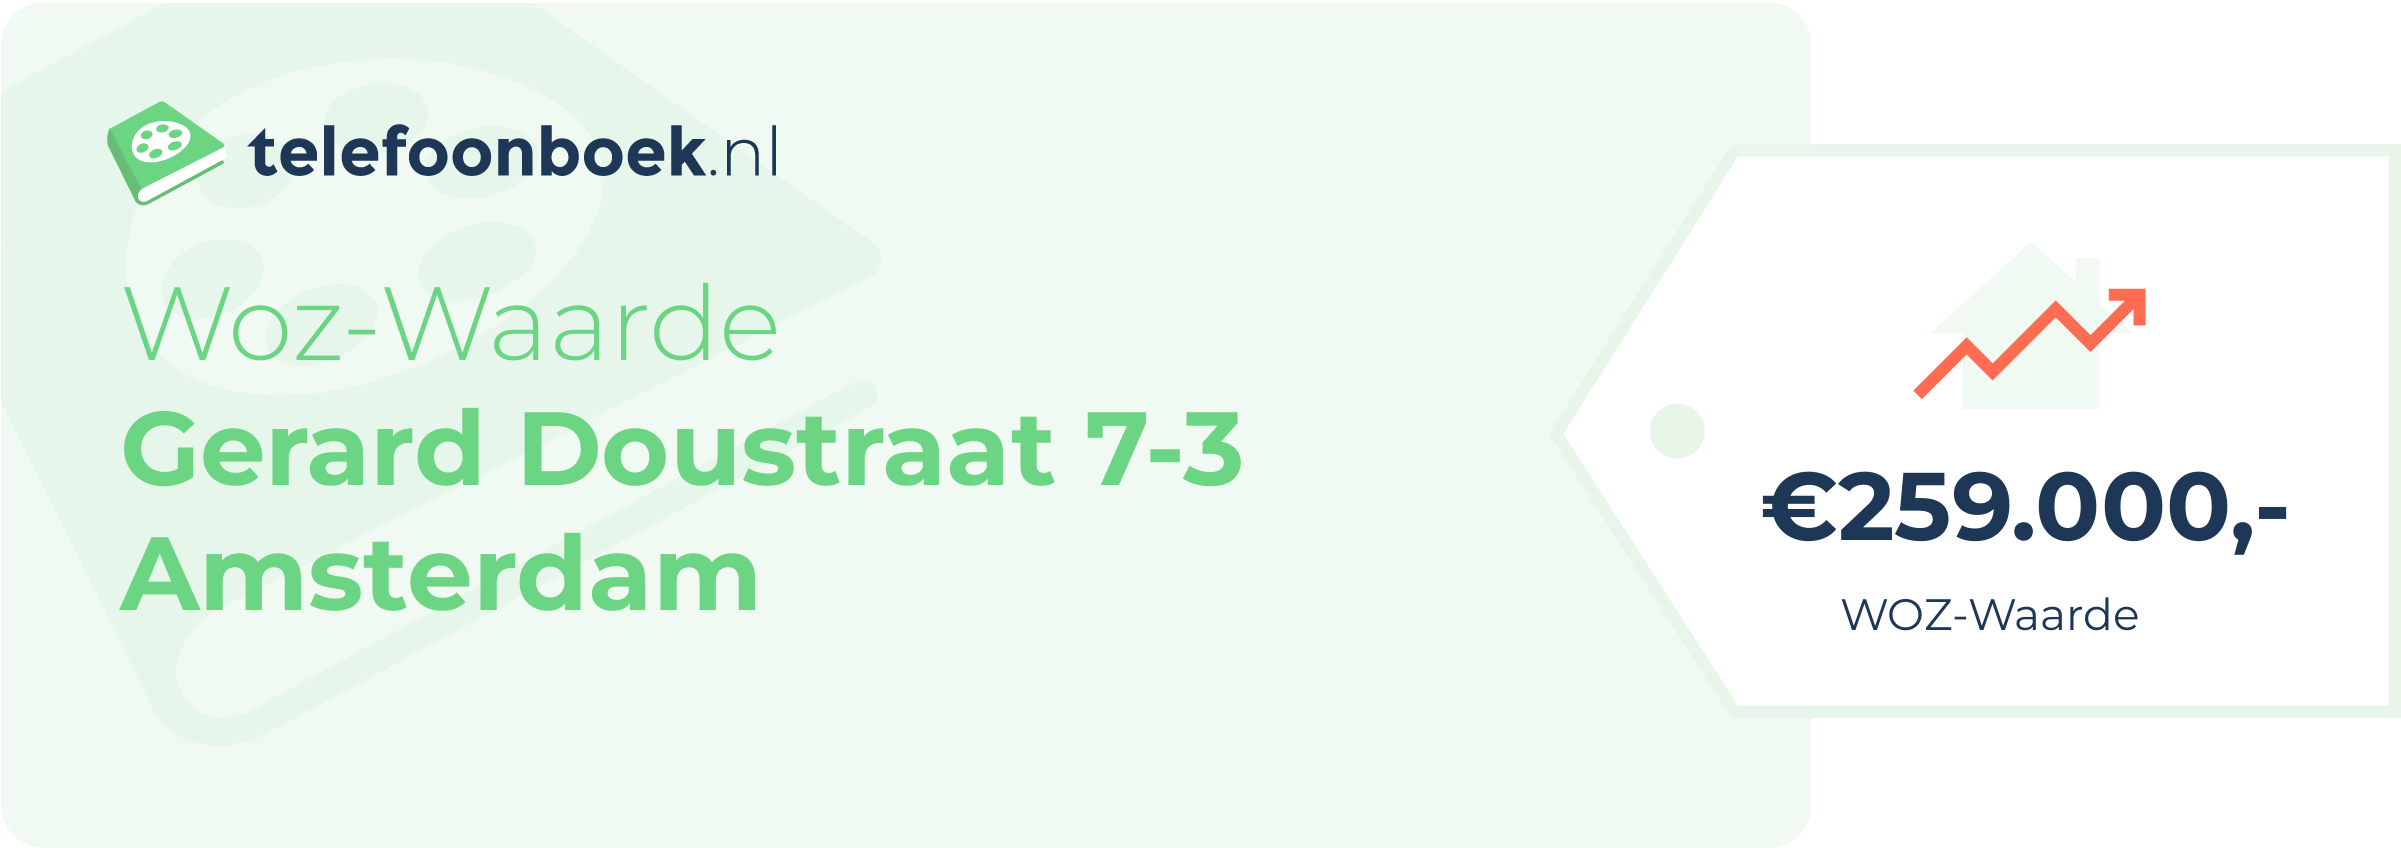 WOZ-waarde Gerard Doustraat 7-3 Amsterdam